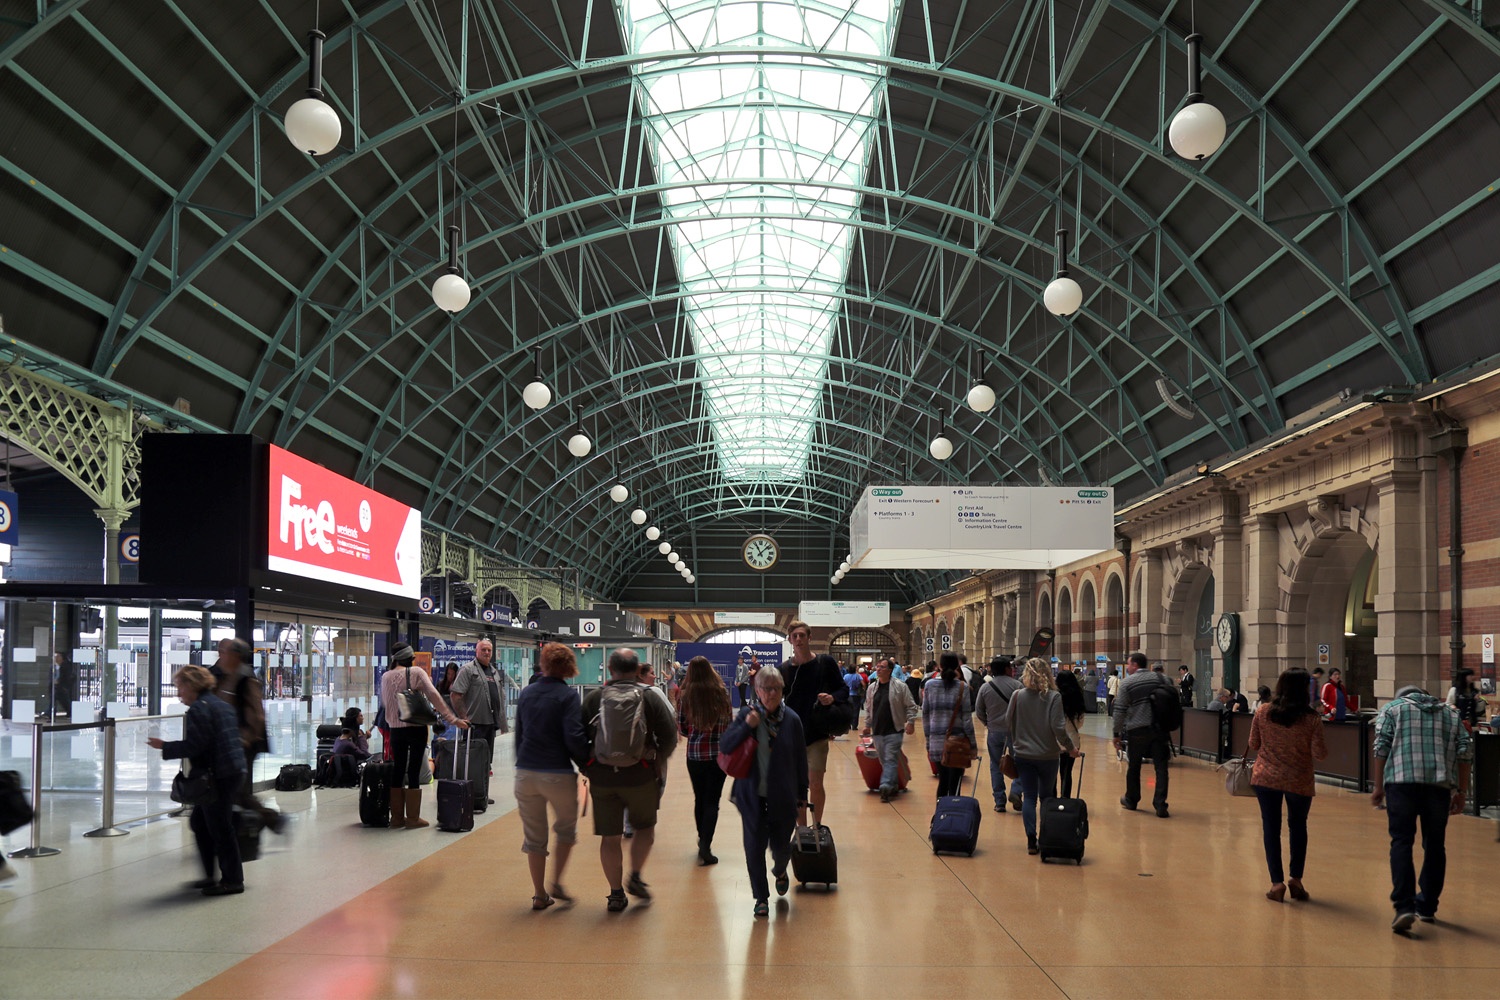 bill-hocker-central-station-sydney-australia-2015